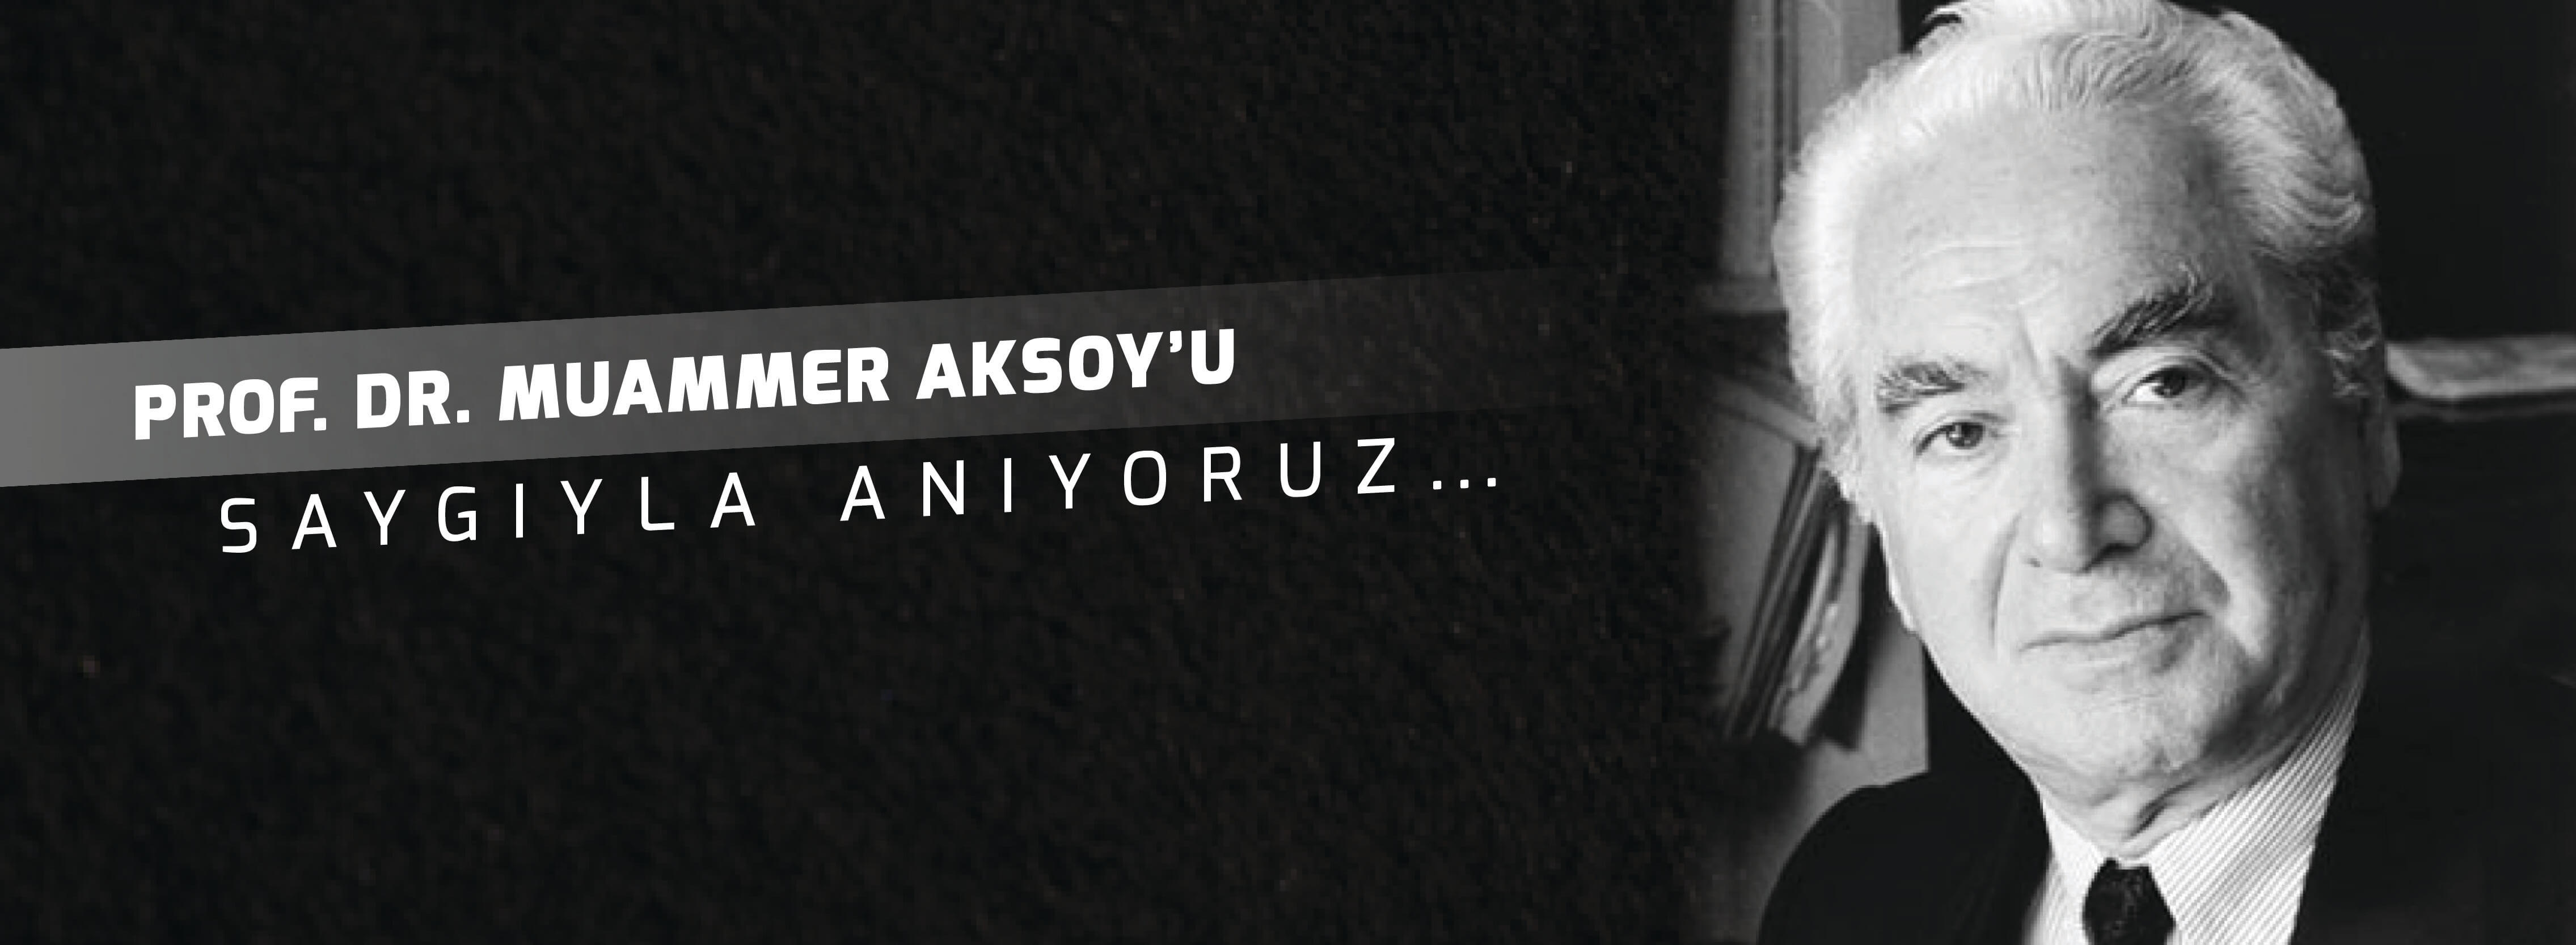 Belediye Başkanı Sayın Ülgür Gökhan'ın Prof. Dr. Muammer Aksoy'u Anma Mesajı